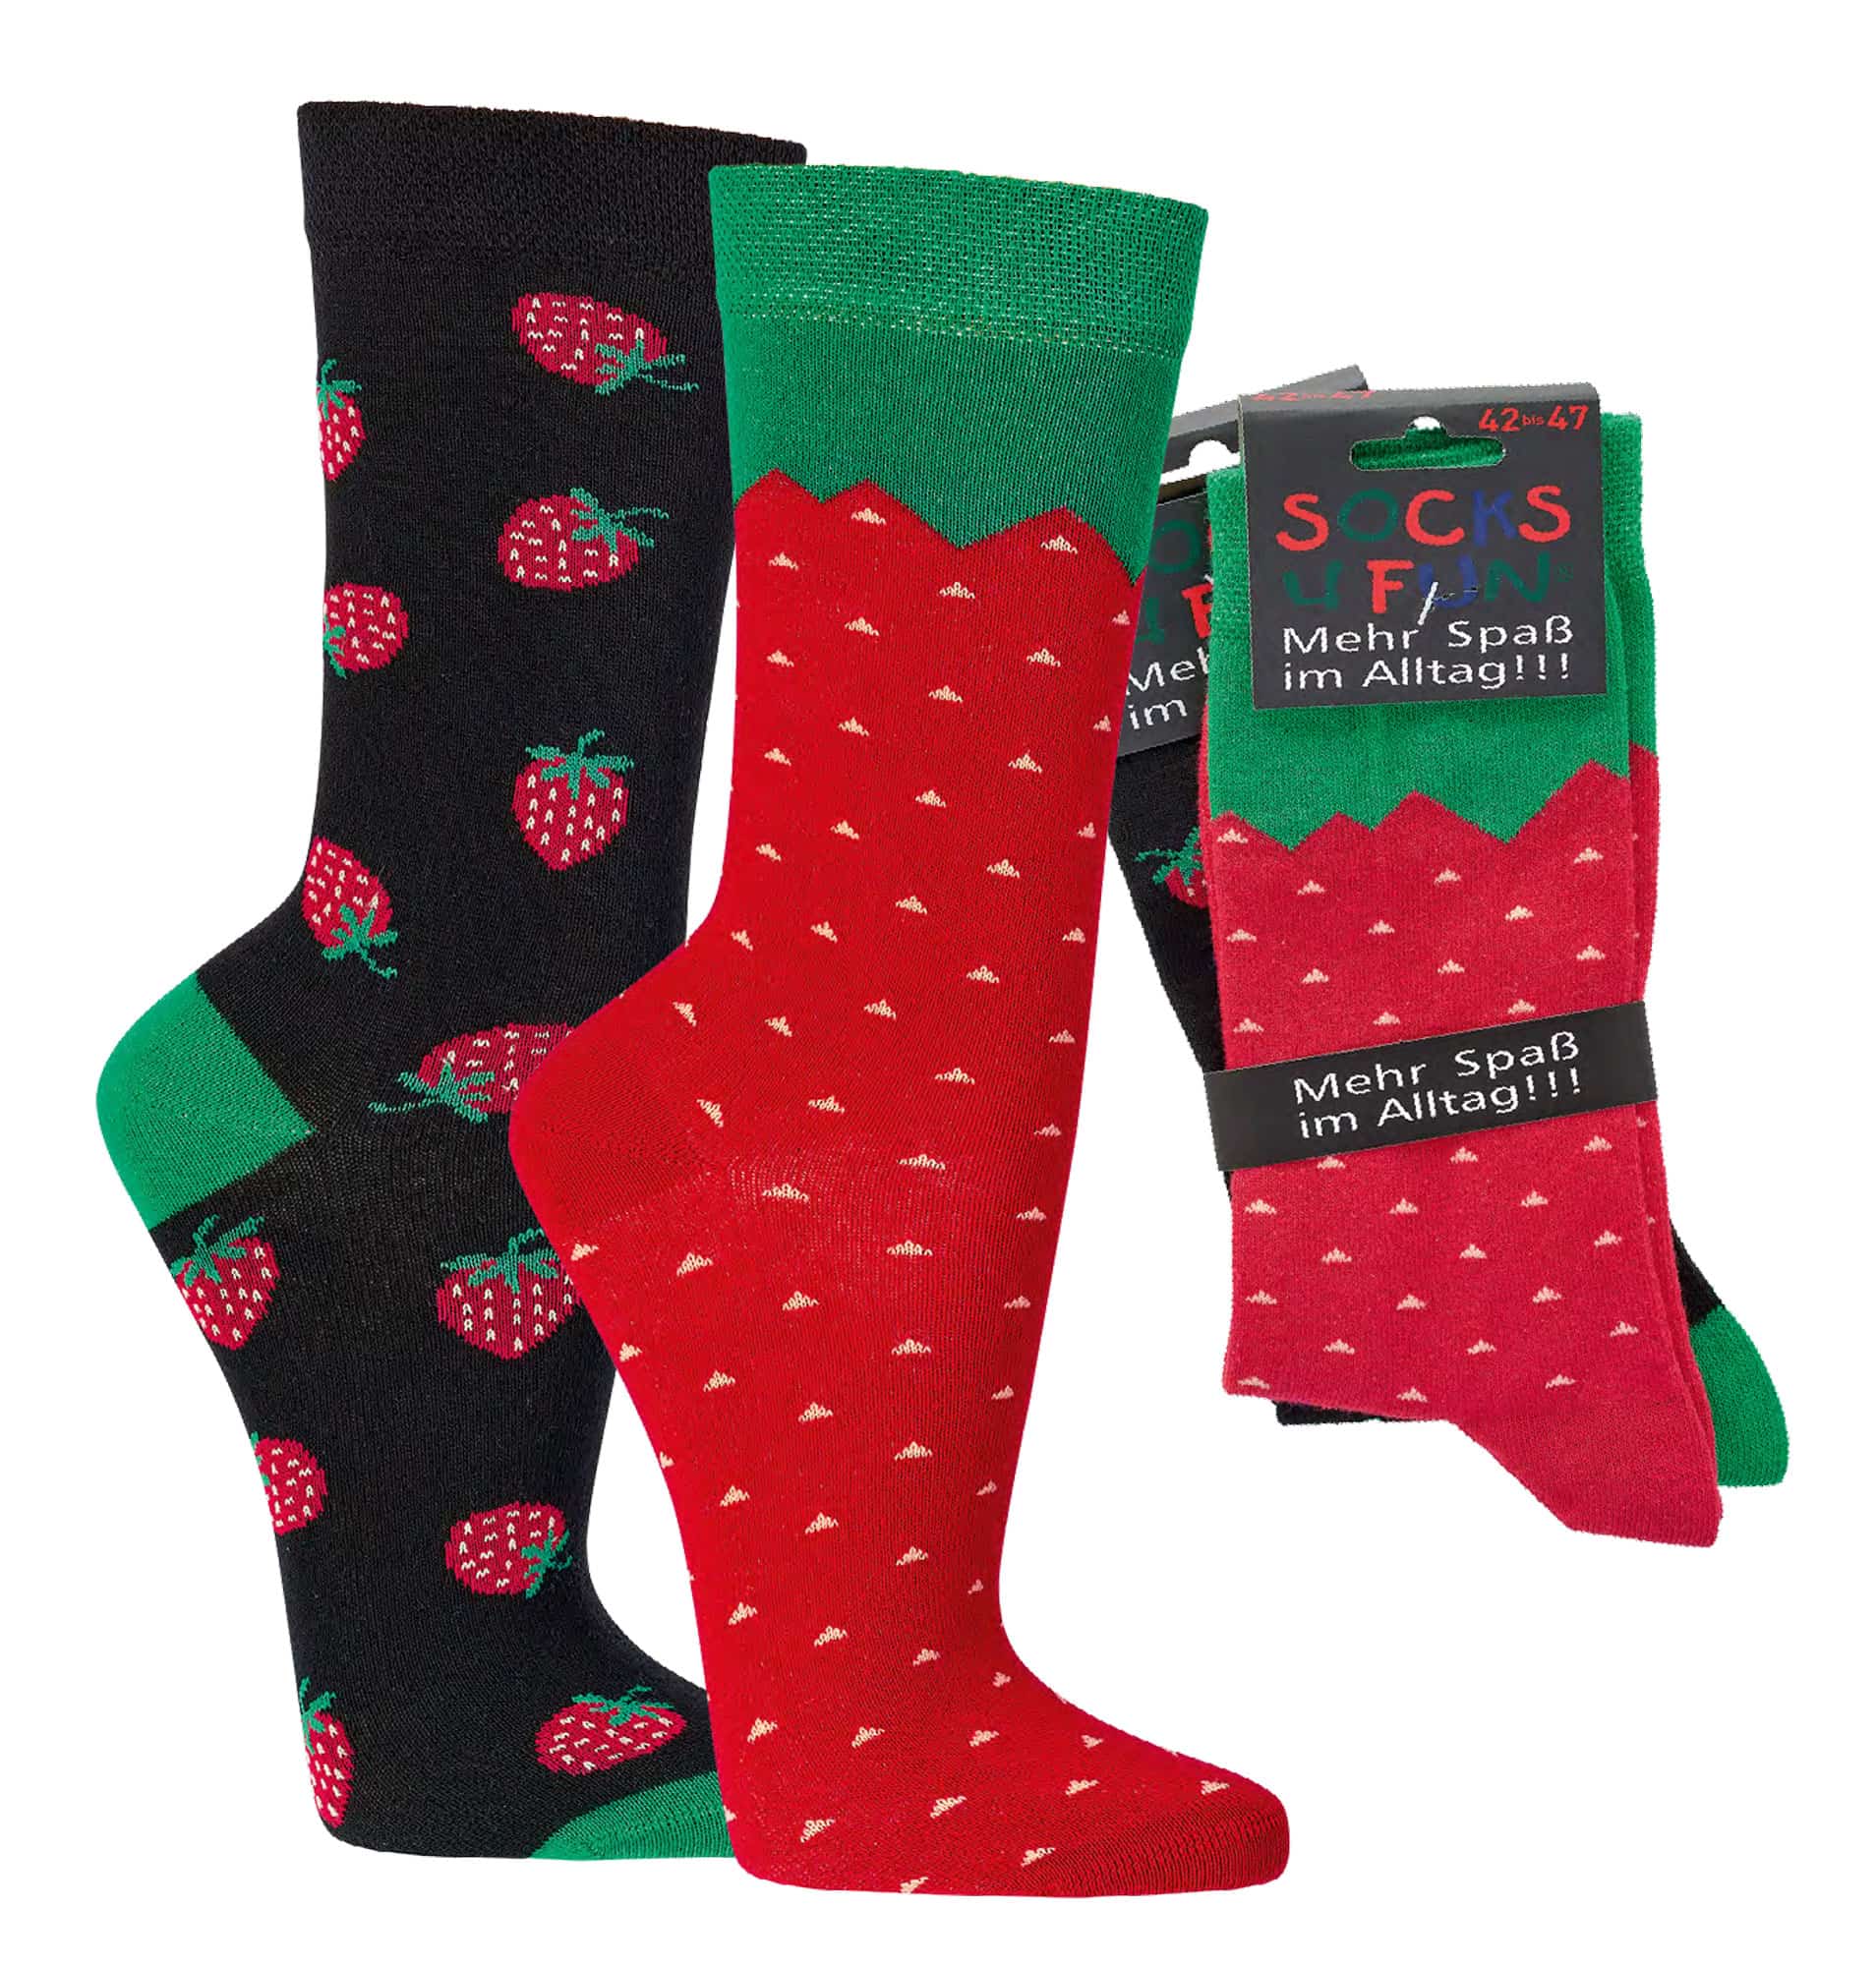 ERDBEERE  witzige Socken als Geschenkidee oder zum Selbertragen  2 Paar